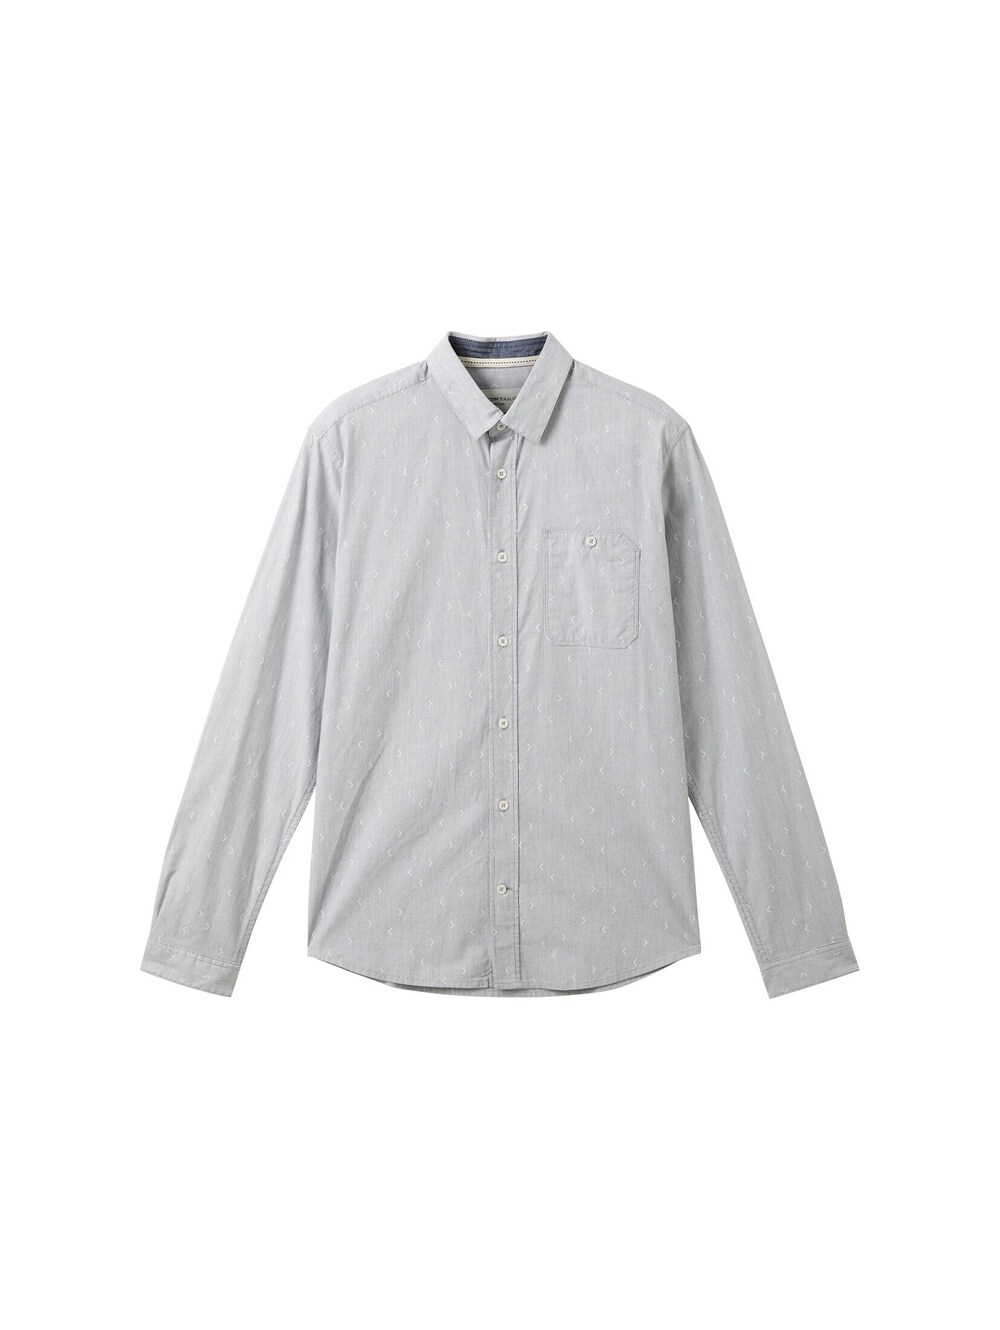 Рубашка на пуговицах стандартного кроя Tom Tailor, серый рубашка узкого кроя на пуговицах tom tailor denim бежевый